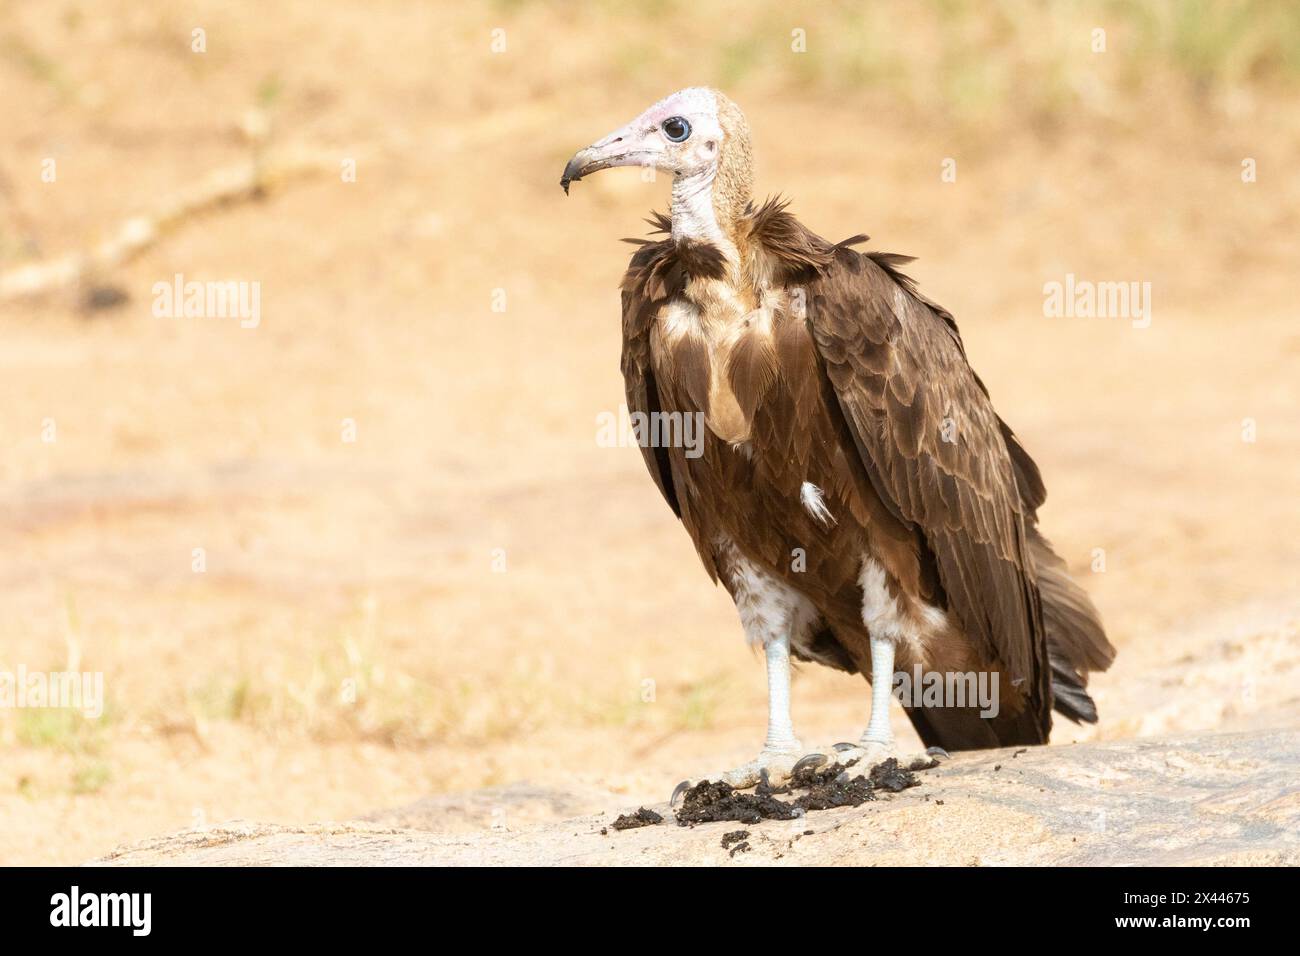 La Vulture à capuchon (Necrosyrtes monachus) est considérée comme une espèce en danger critique en raison de l'empoisonnement, du commerce de la médecine traditionnelle, de la chasse à la nourriture, de la persécution Banque D'Images